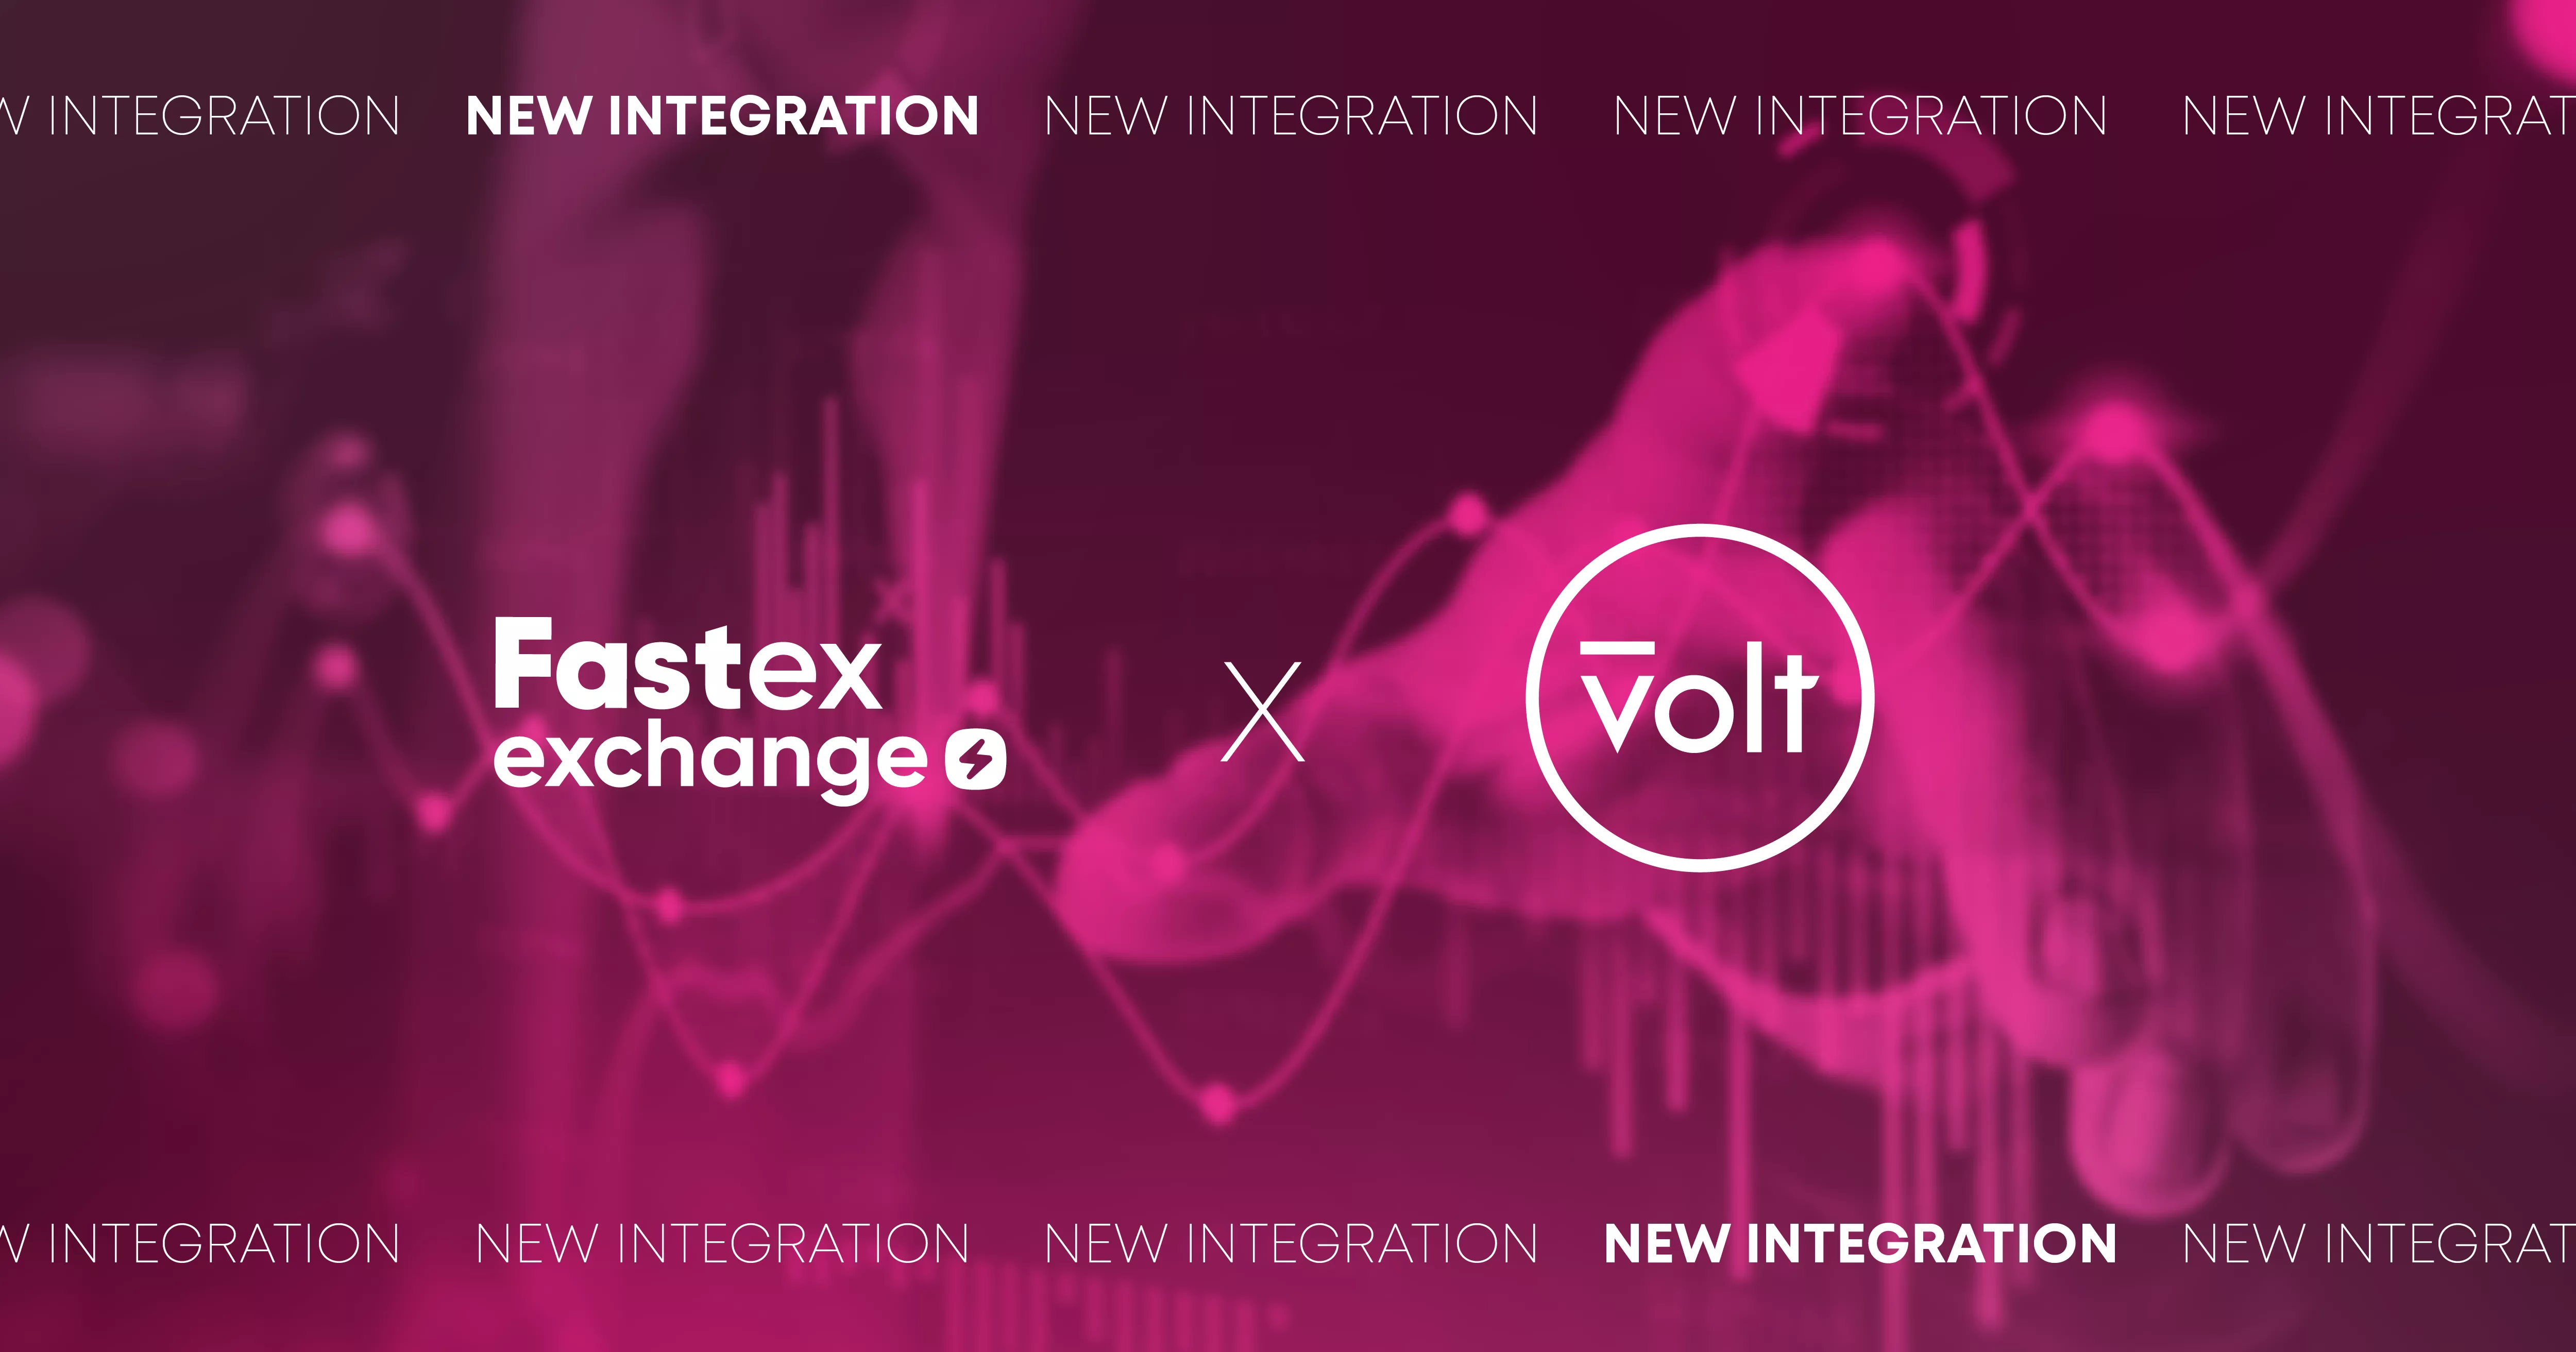 Fastex Exchange-ն ինտեգրում է Volt-ը պարզեցված վճարային լուծումների համար 